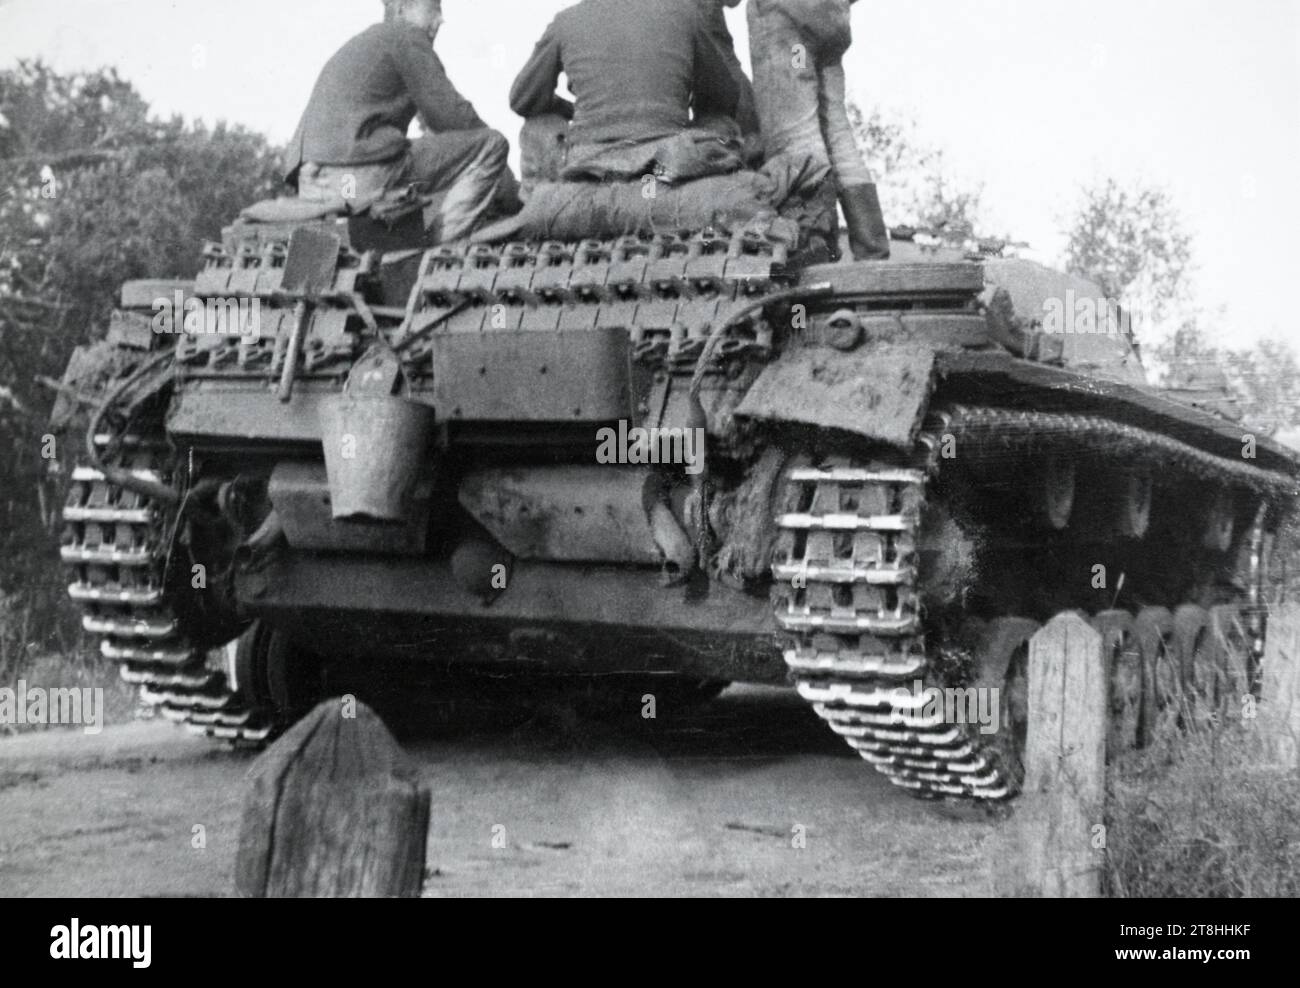 A rear view of a German army Sturmgeschütz III assault gun during the Second World War. Stock Photo